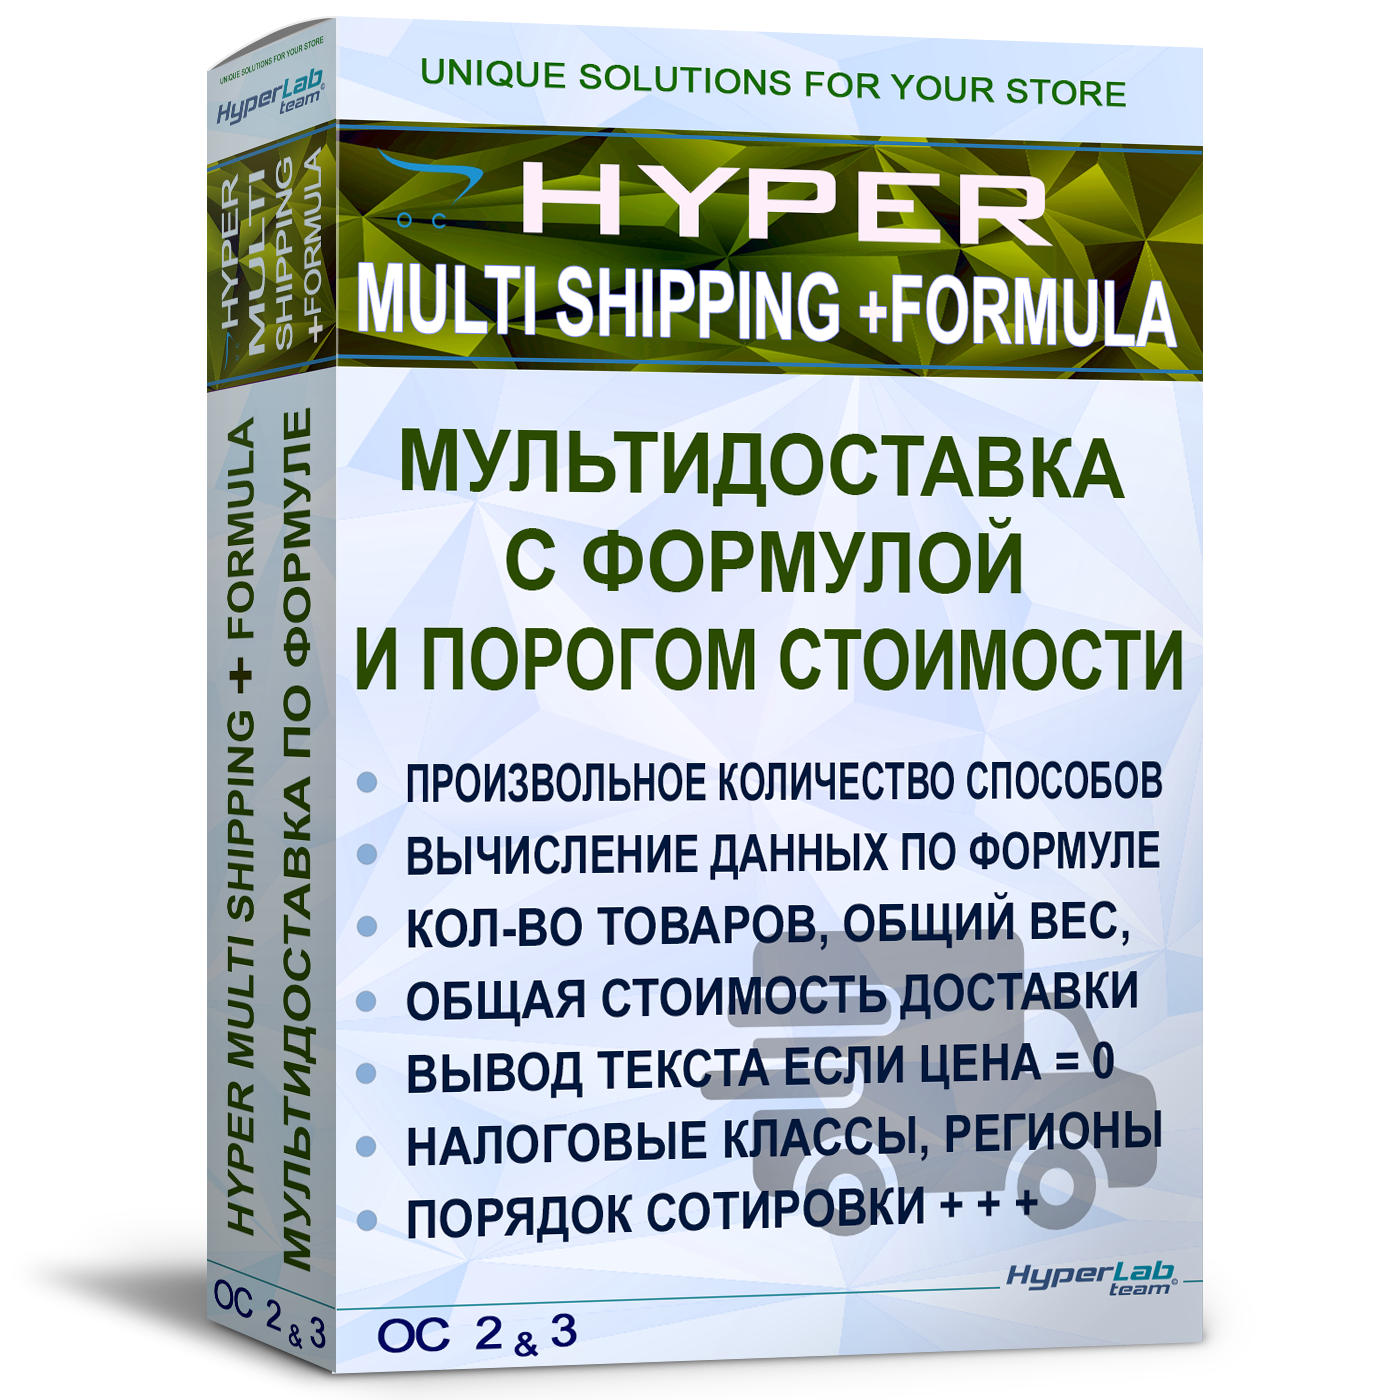 Мультидоставка с формулой и порогом стоимости - Multi shipping +formula